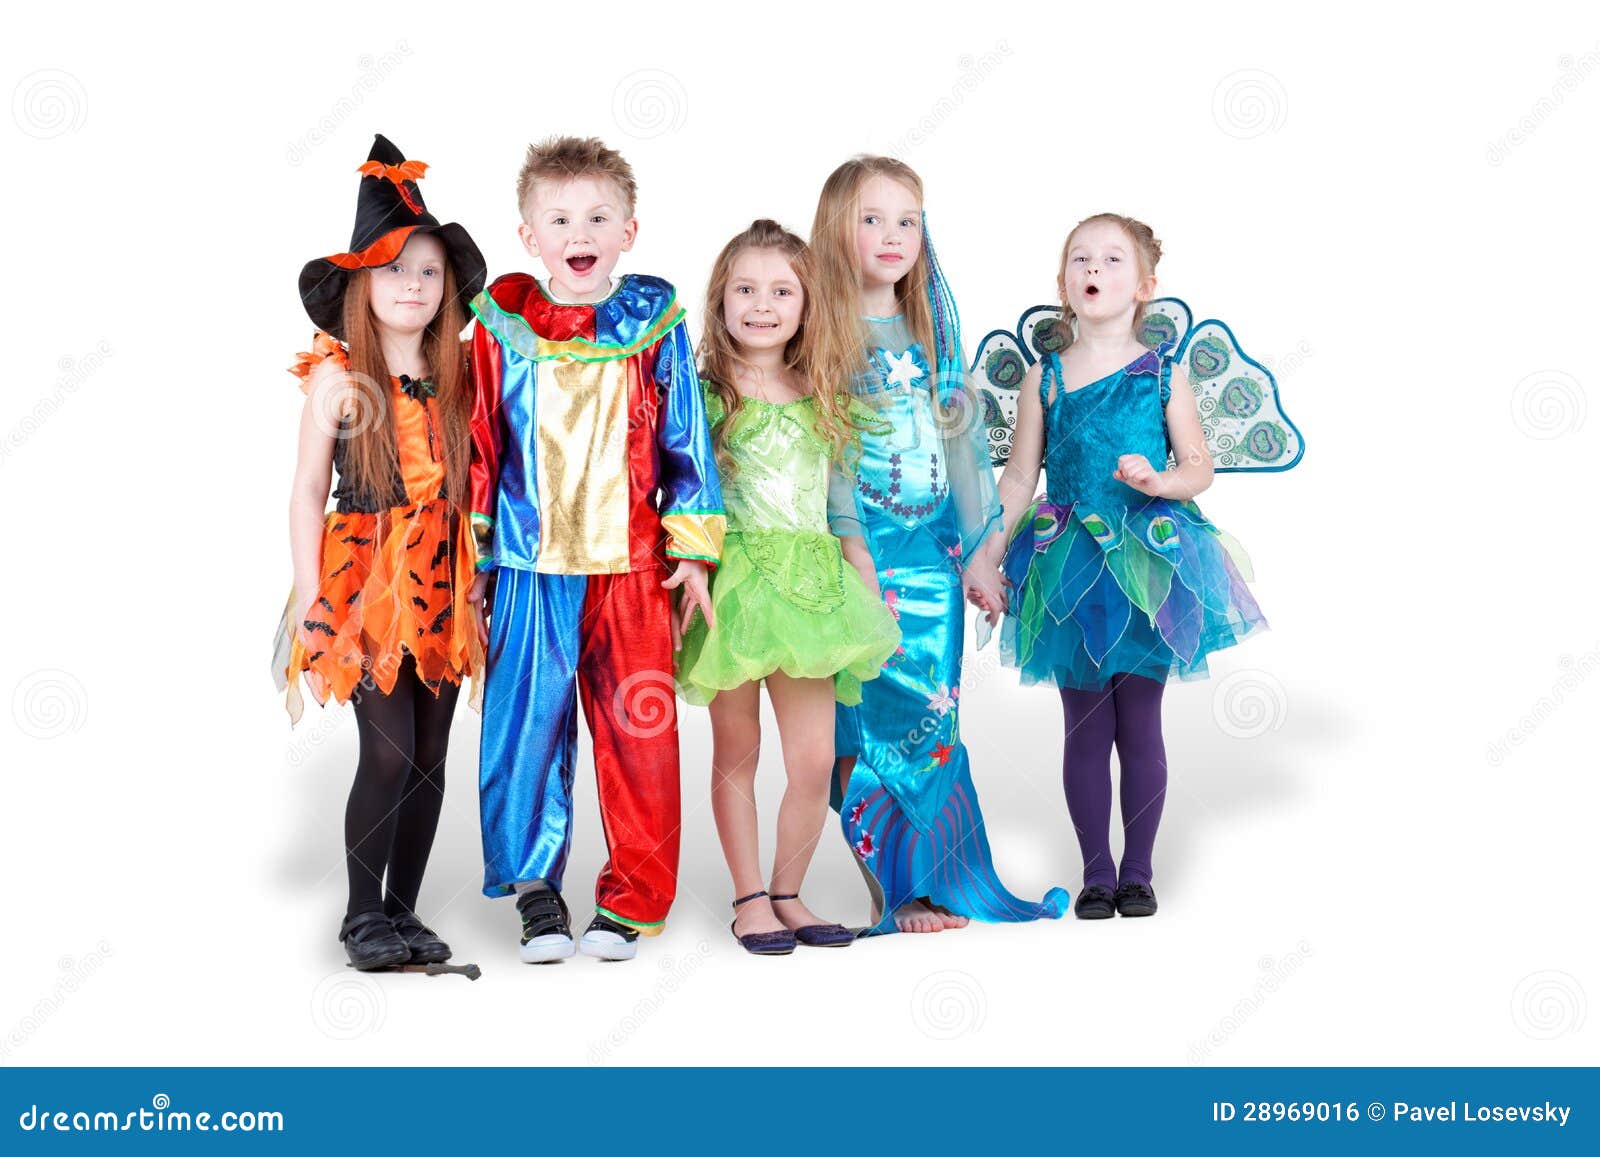 Arbitrage Kan weerstaan Staat Kinderen in Carnaval Kostuumstribune Stock Foto - Image of fantasie,  knuppel: 28969016